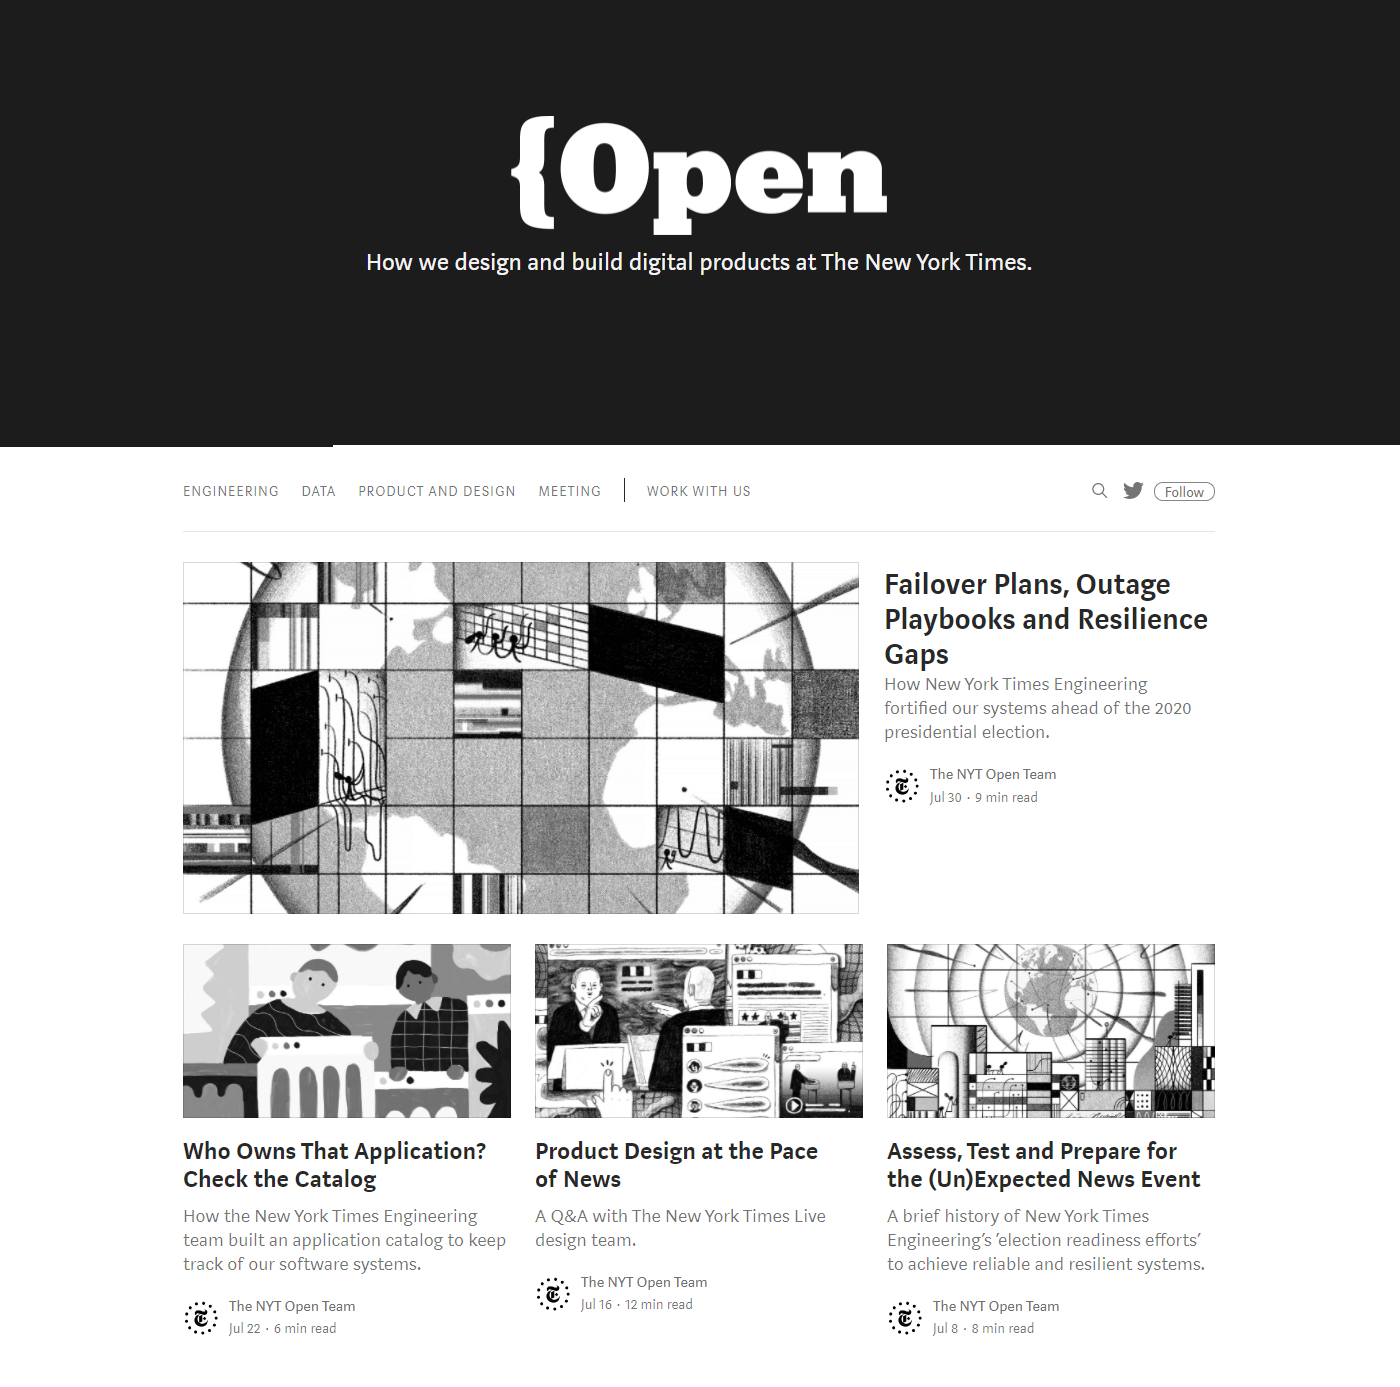 紐約時報微型網站 Open 的主頁。